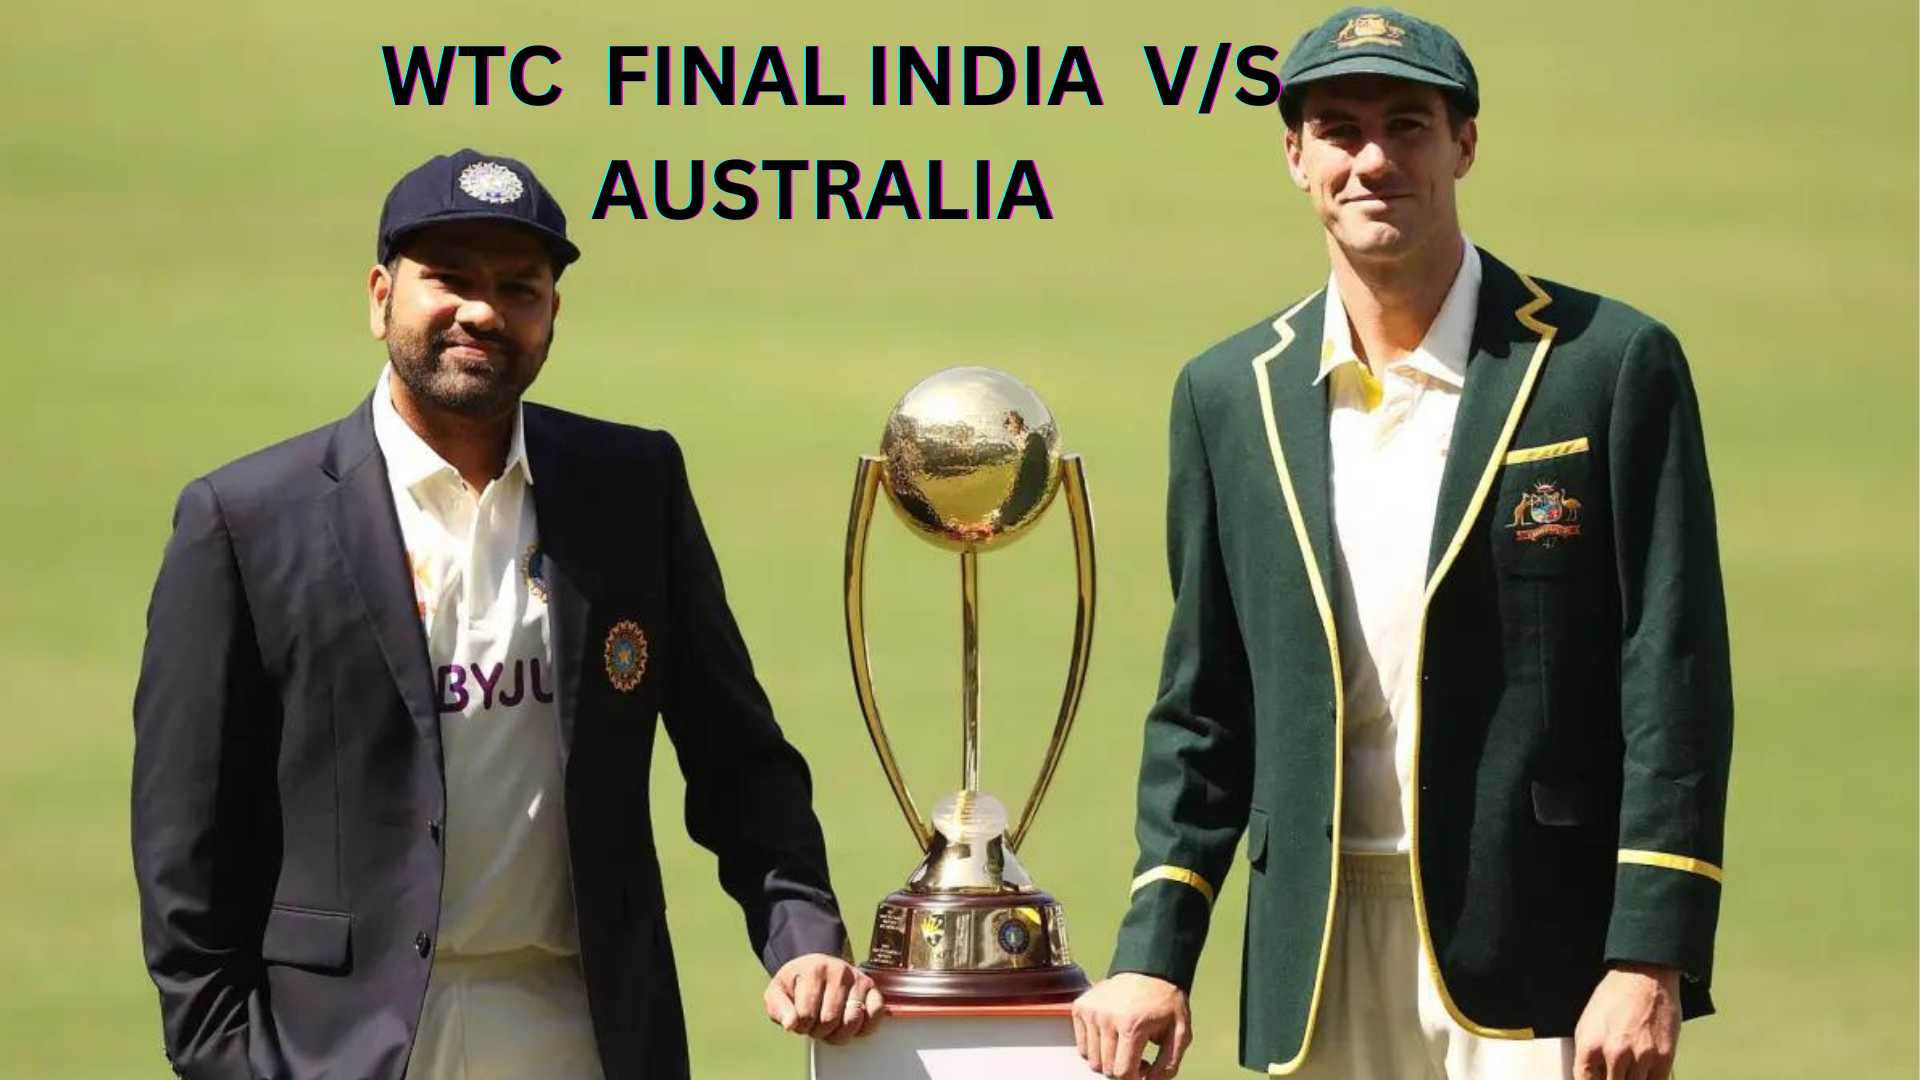 WTC FINAL INDIA VS AUSTRALIA